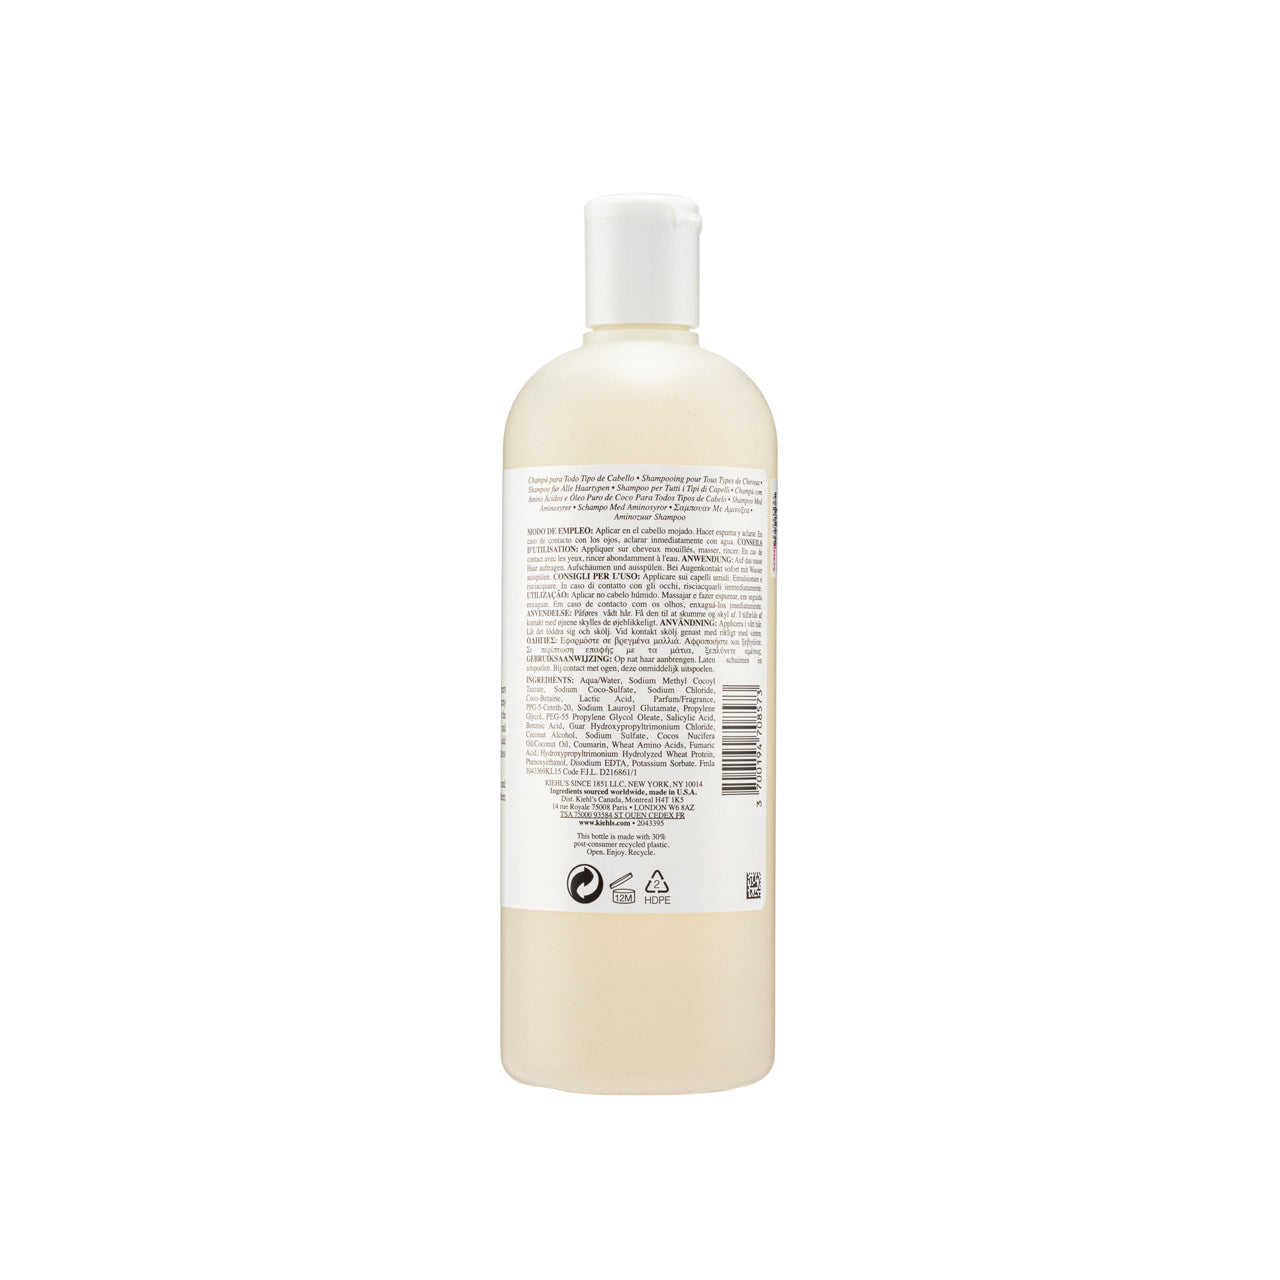 Kiehl’s Amino Acid Shampoo 500 ML | Sasa Global eShop